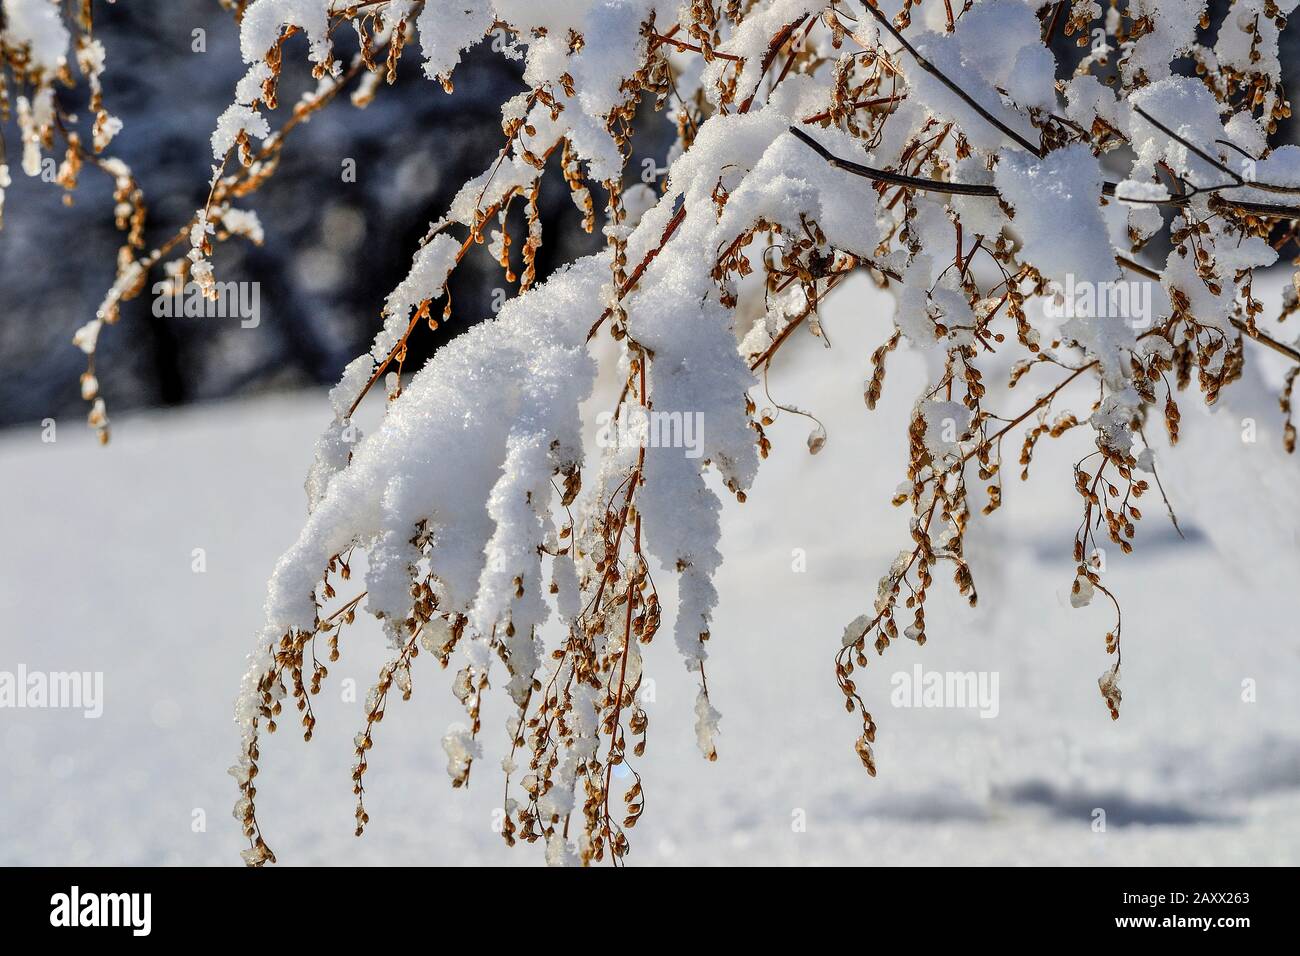 Branche sèche de la plante avec des graines dans la forêt d'hiver avec de la neige moelleuse couverte après la chute de neige gros plan sur fond flou. Magnifique détail de nat d'hiver Banque D'Images